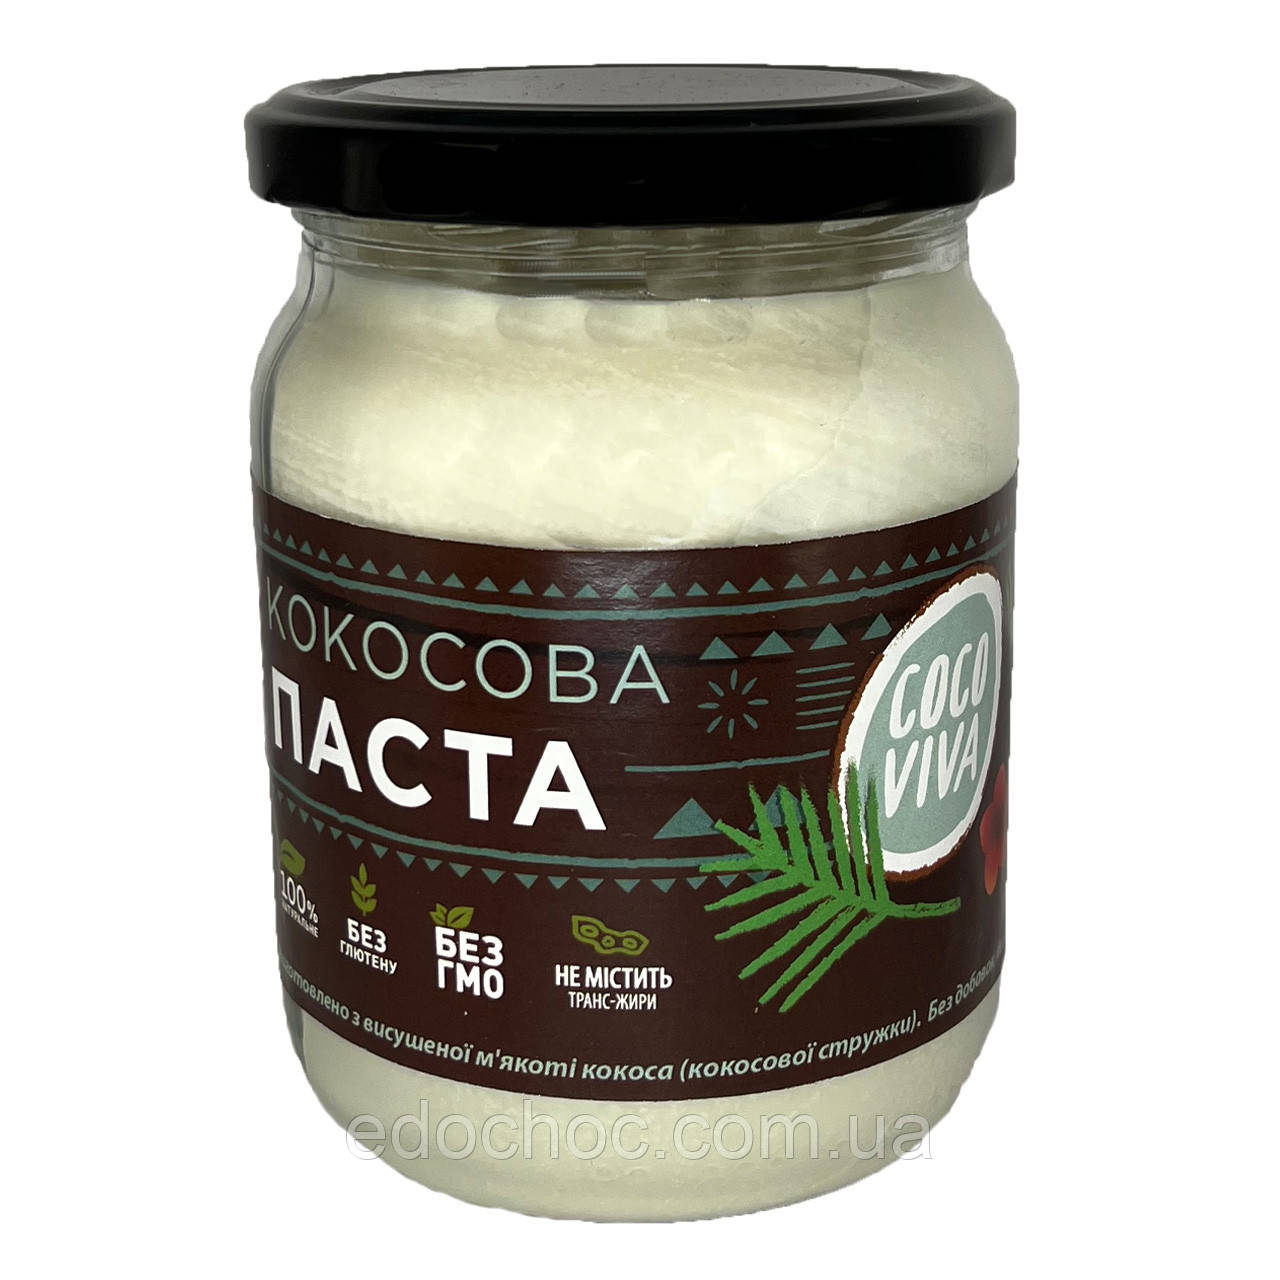 Кокосова паста, Манна, Coco Viva, 500г